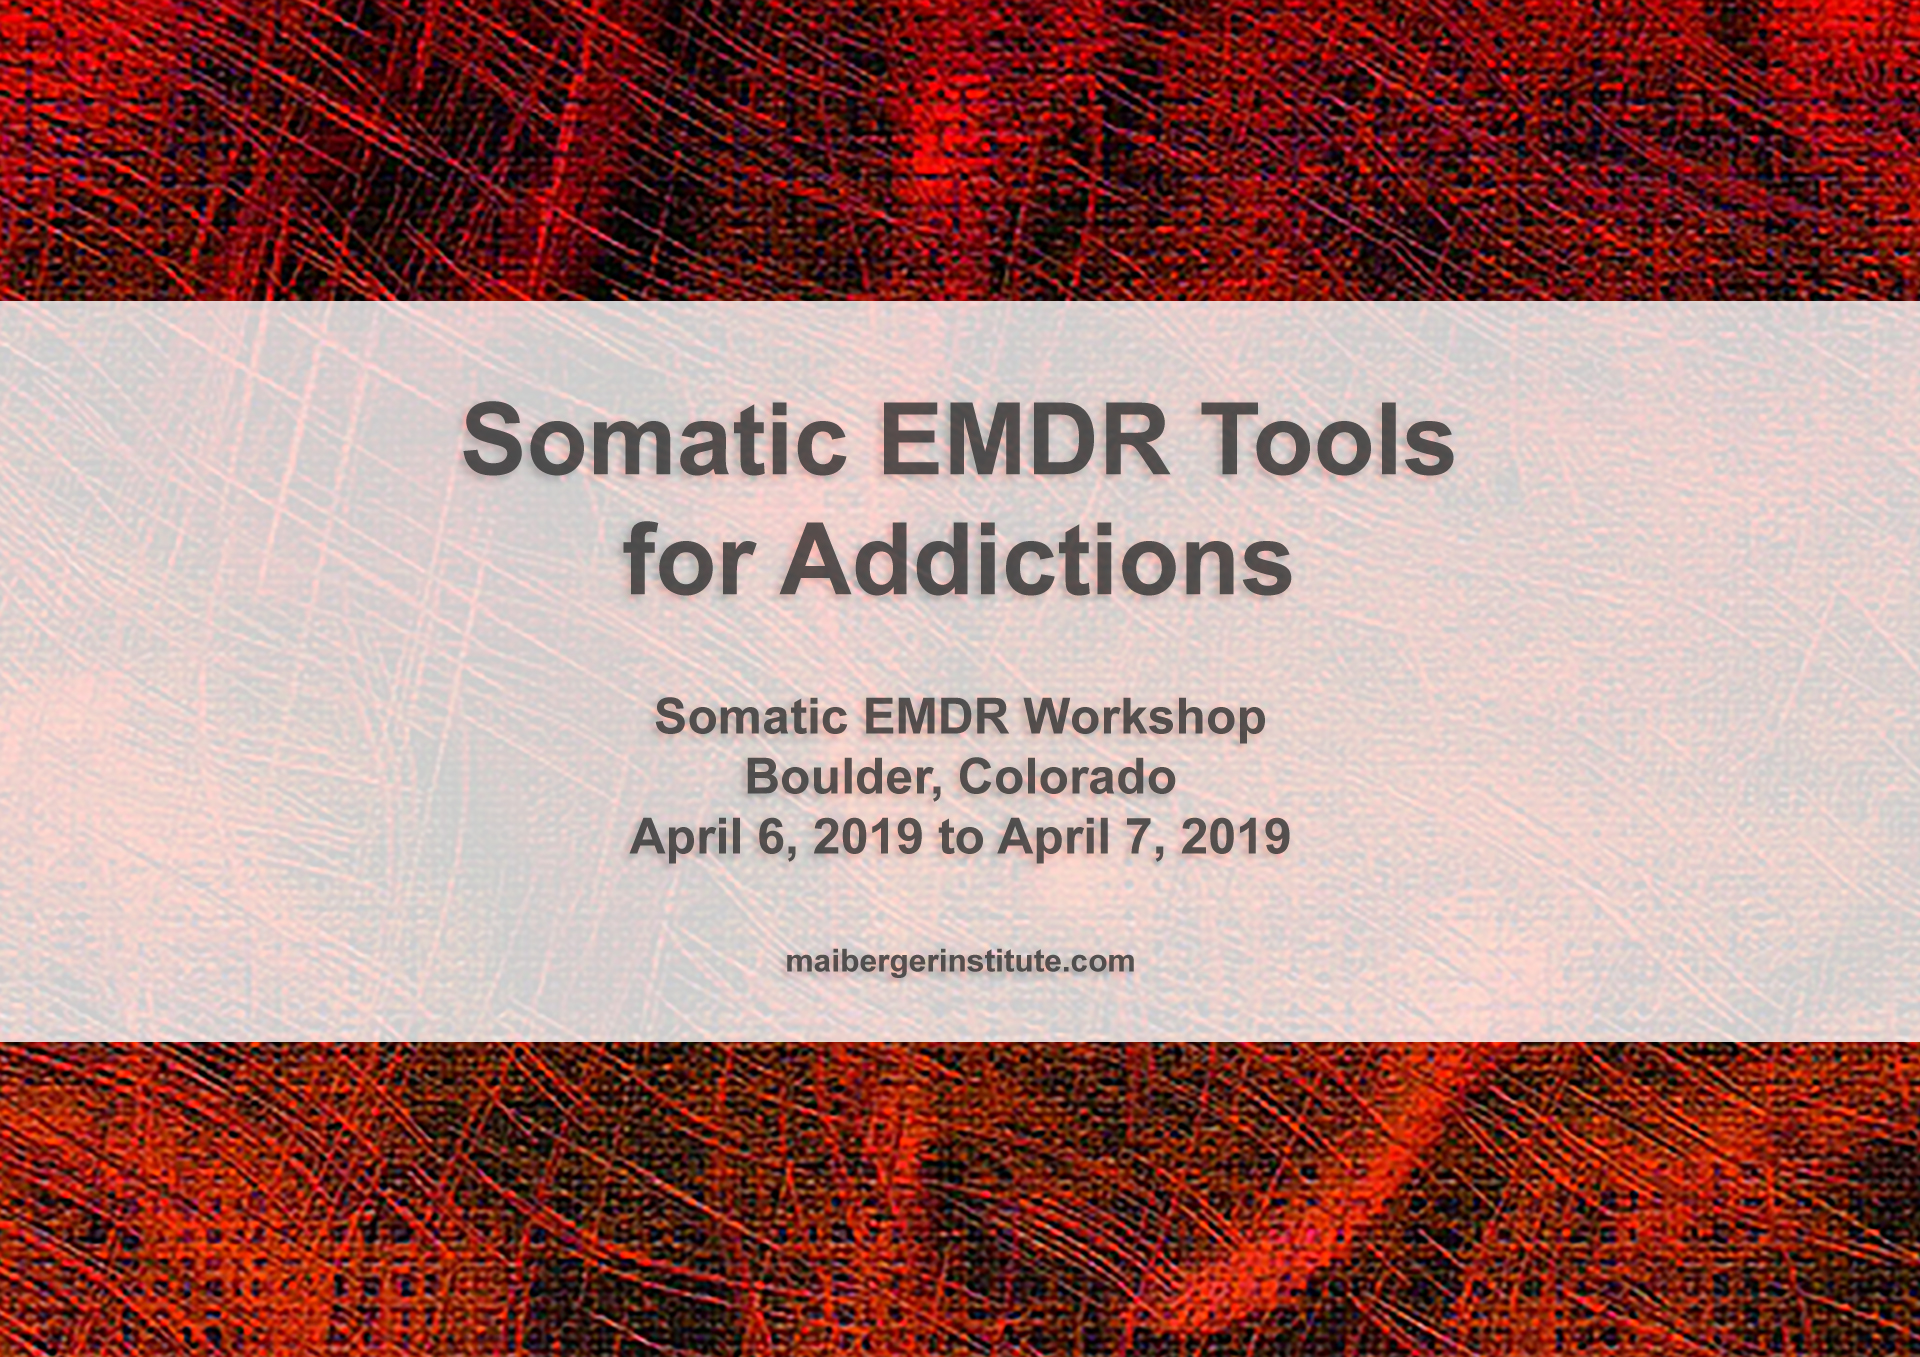 Somatic EMDR Tools for Addictions - Somatic EMDR Workshop in Boulder, Colorado - April 6-7, 2019